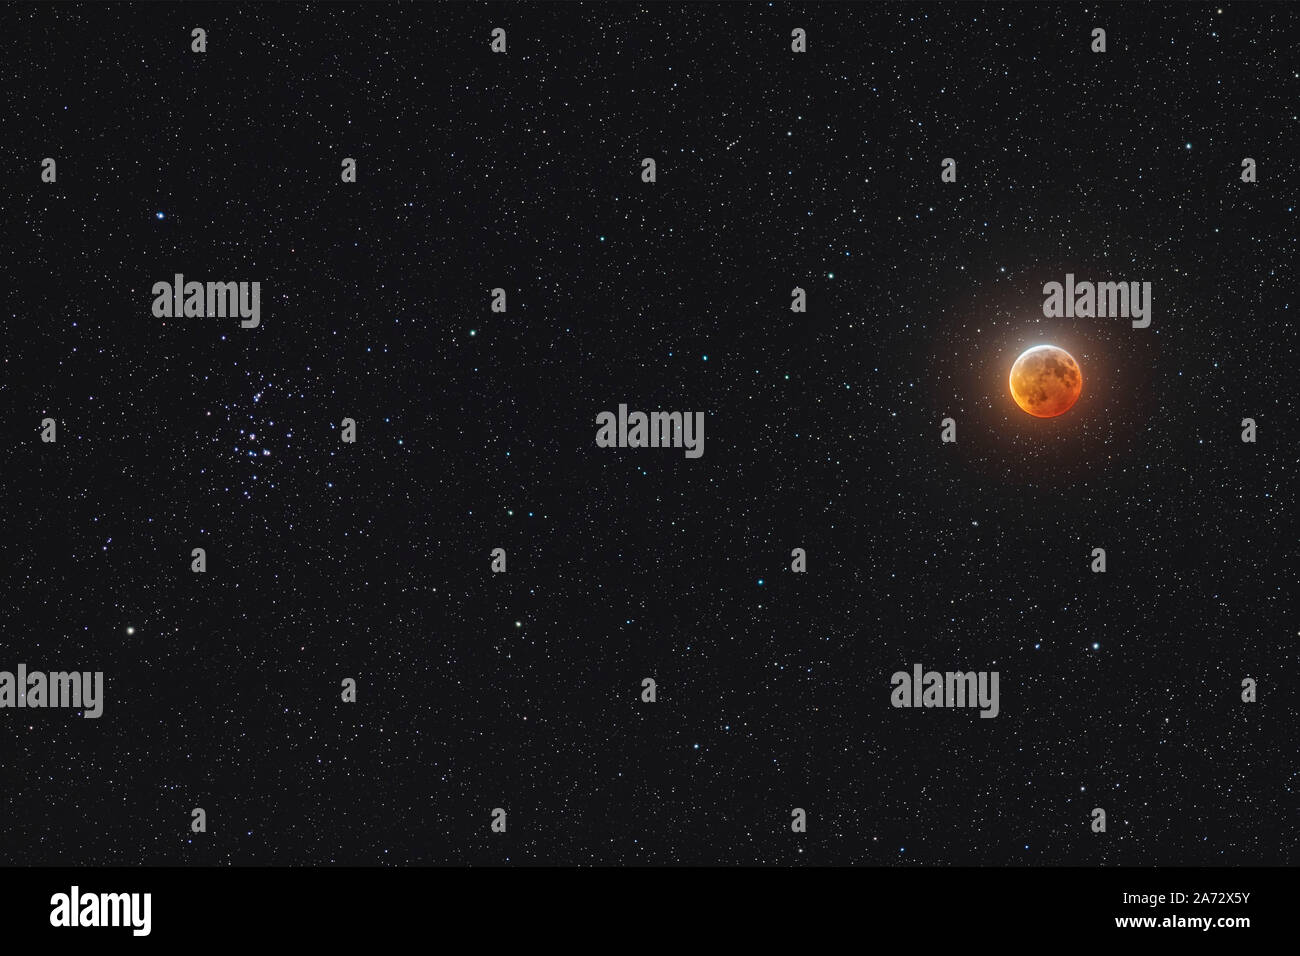 La luna a metà total eclipse, il 20 gennaio 2019, con essa risplende accanto all'Alveare star cluster, Messier 44, nel cancro. Questa è stata la visuale unica Foto Stock